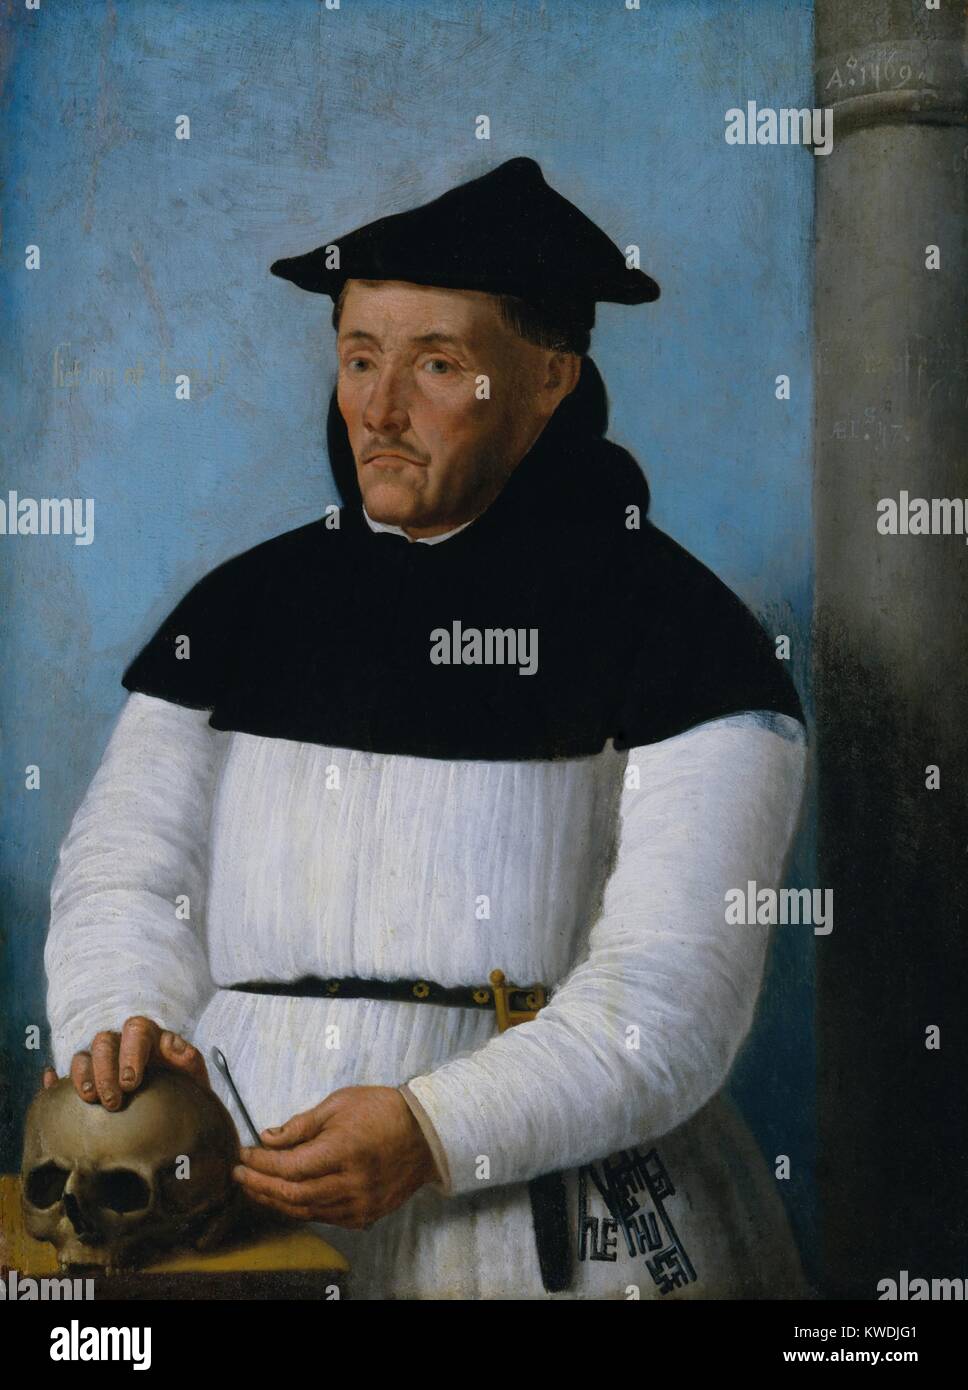 PORTRAIT D'UN CHIRURGIEN, 1569, la peinture de la Renaissance du Nord, Russisch, huile sur bois. Un chirurgien avec les attributs de son métier : un crâne ; un instrument de métal utilisée pour cautériser crânes, et d'une scie (BSLOC   2017 16 116) Banque D'Images